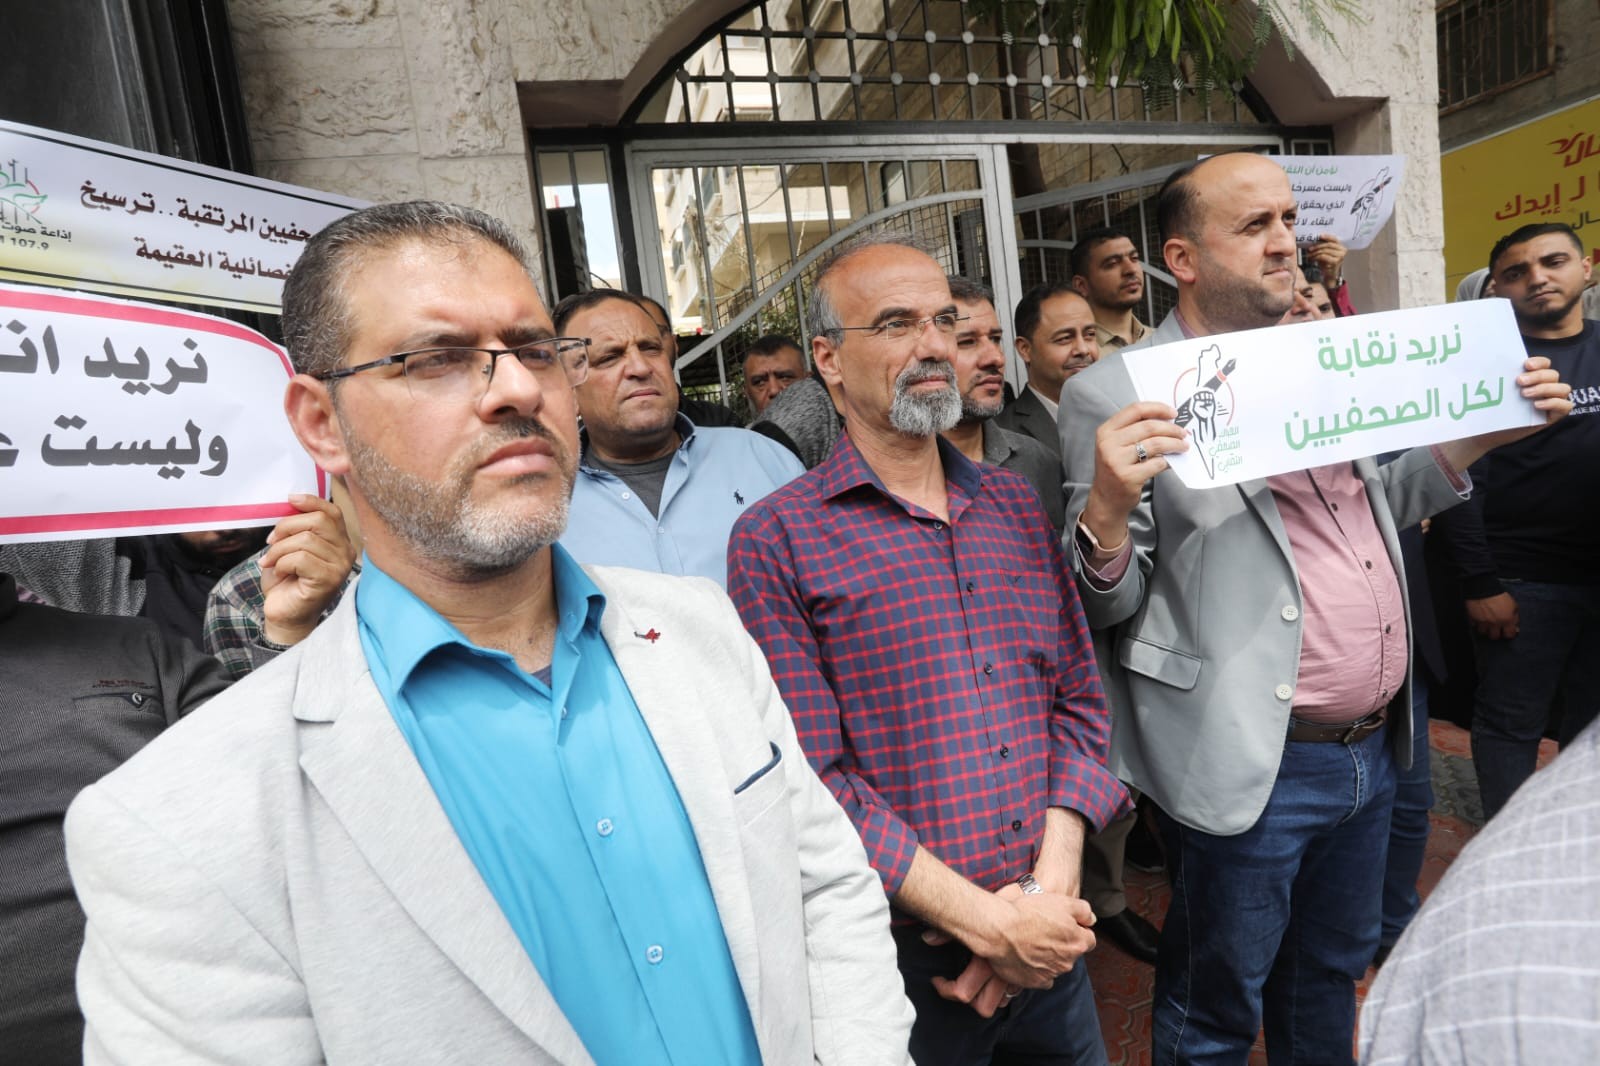 صور من الاعتصام الذي نظمه حراك الصحفيين ضد انتخابات نقابة الصحفيين (10).jpg